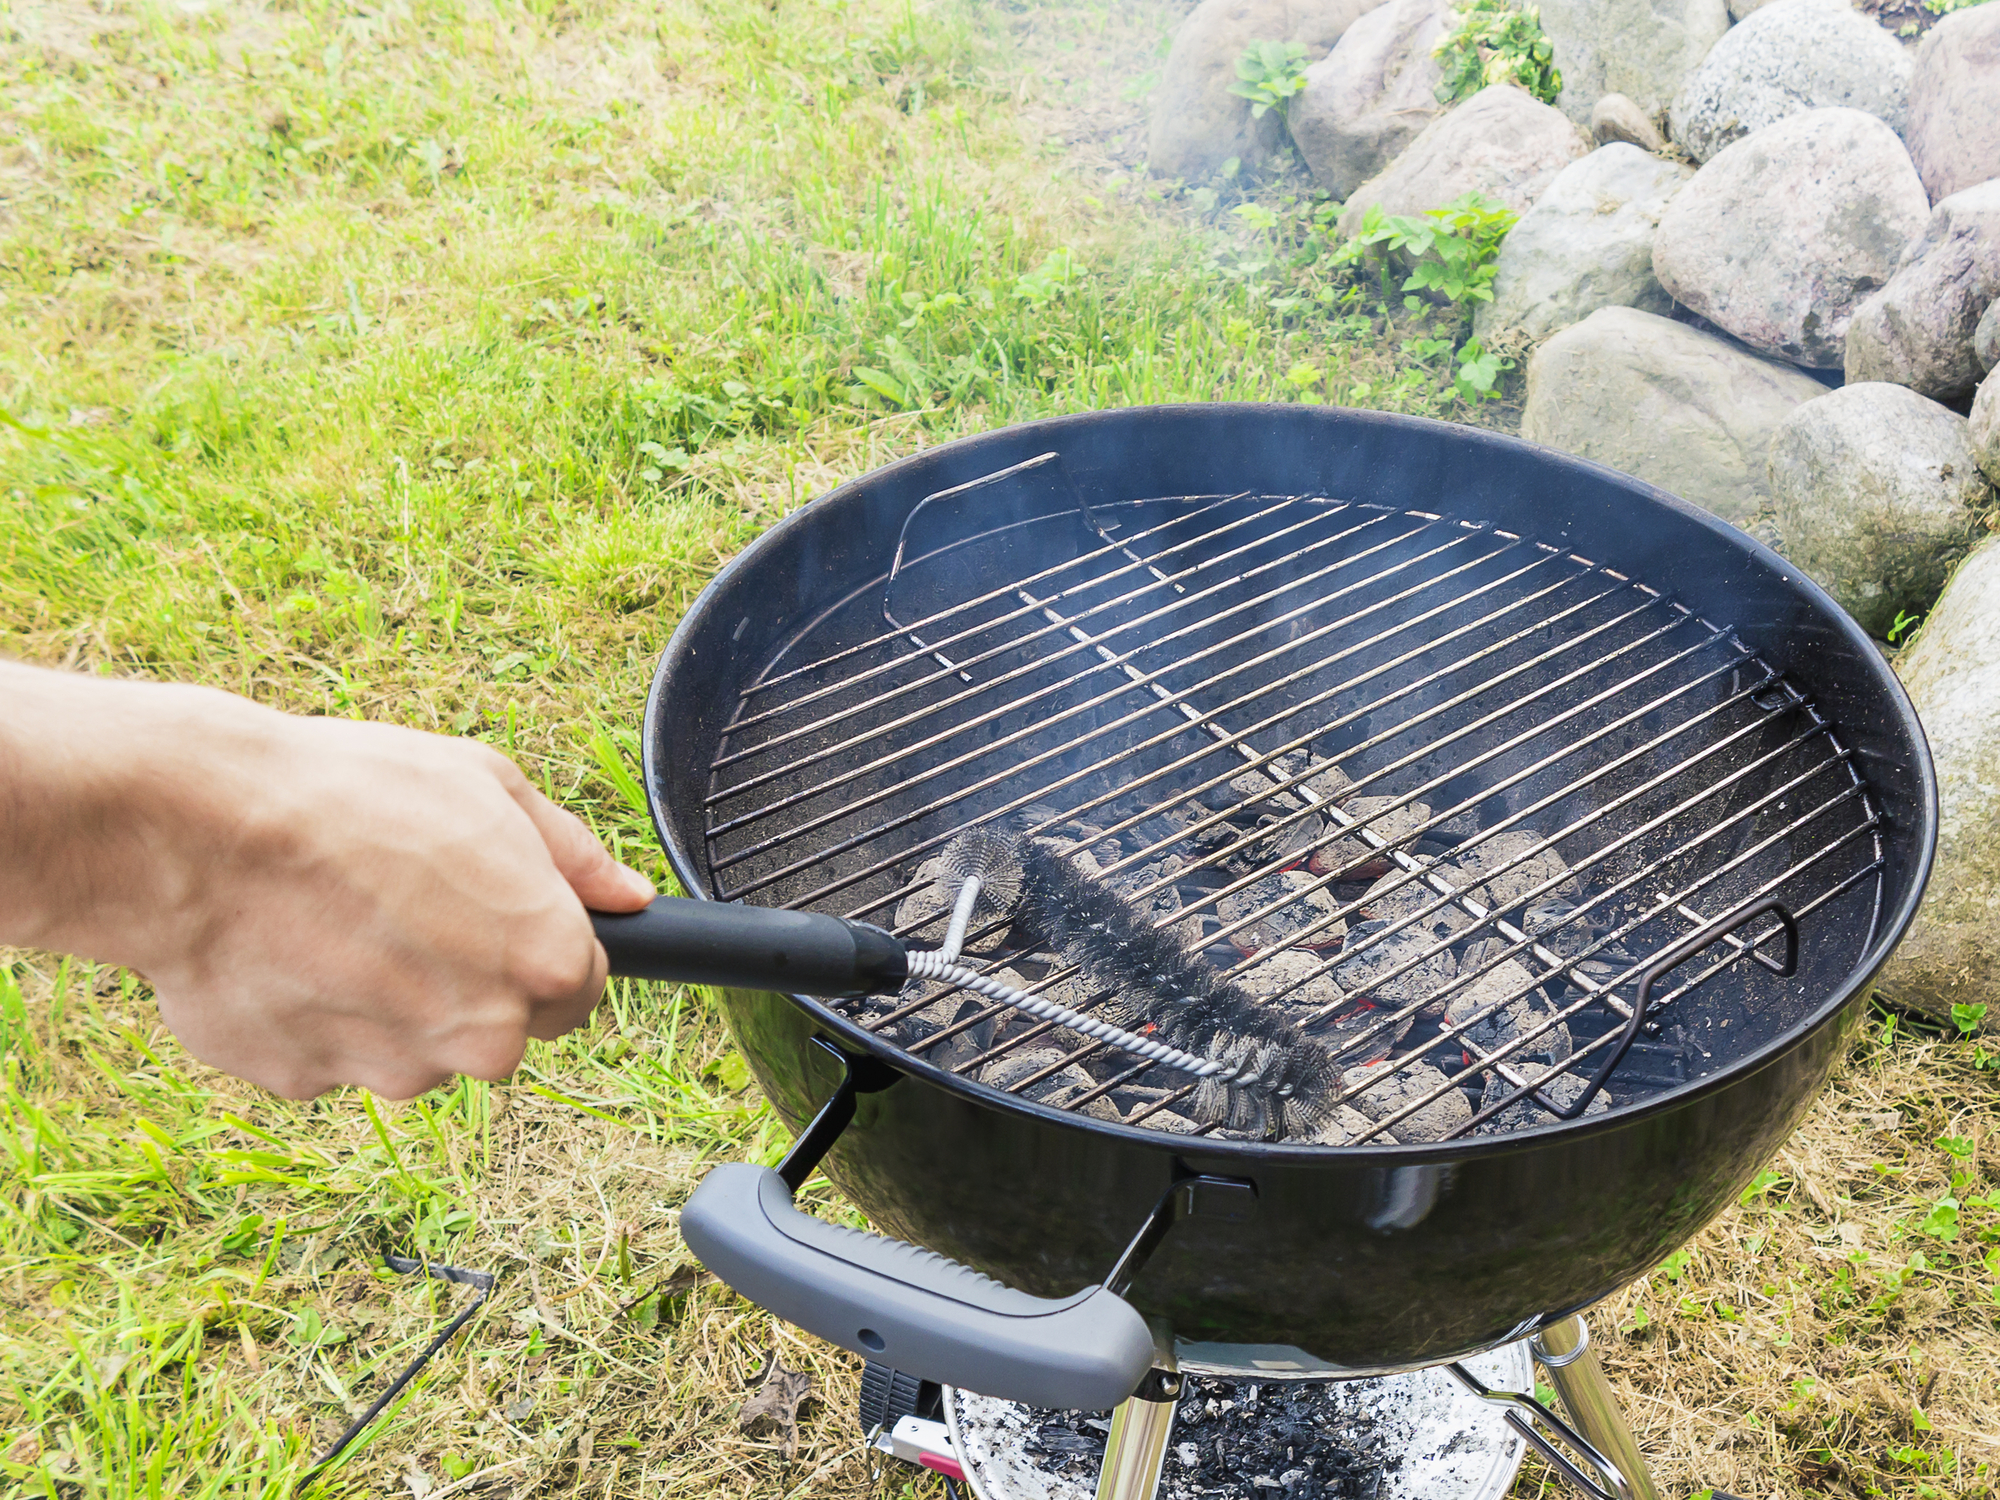 Nettoyer sa grille, le premier geste pour un barbecue sain et réussi - La  Libre